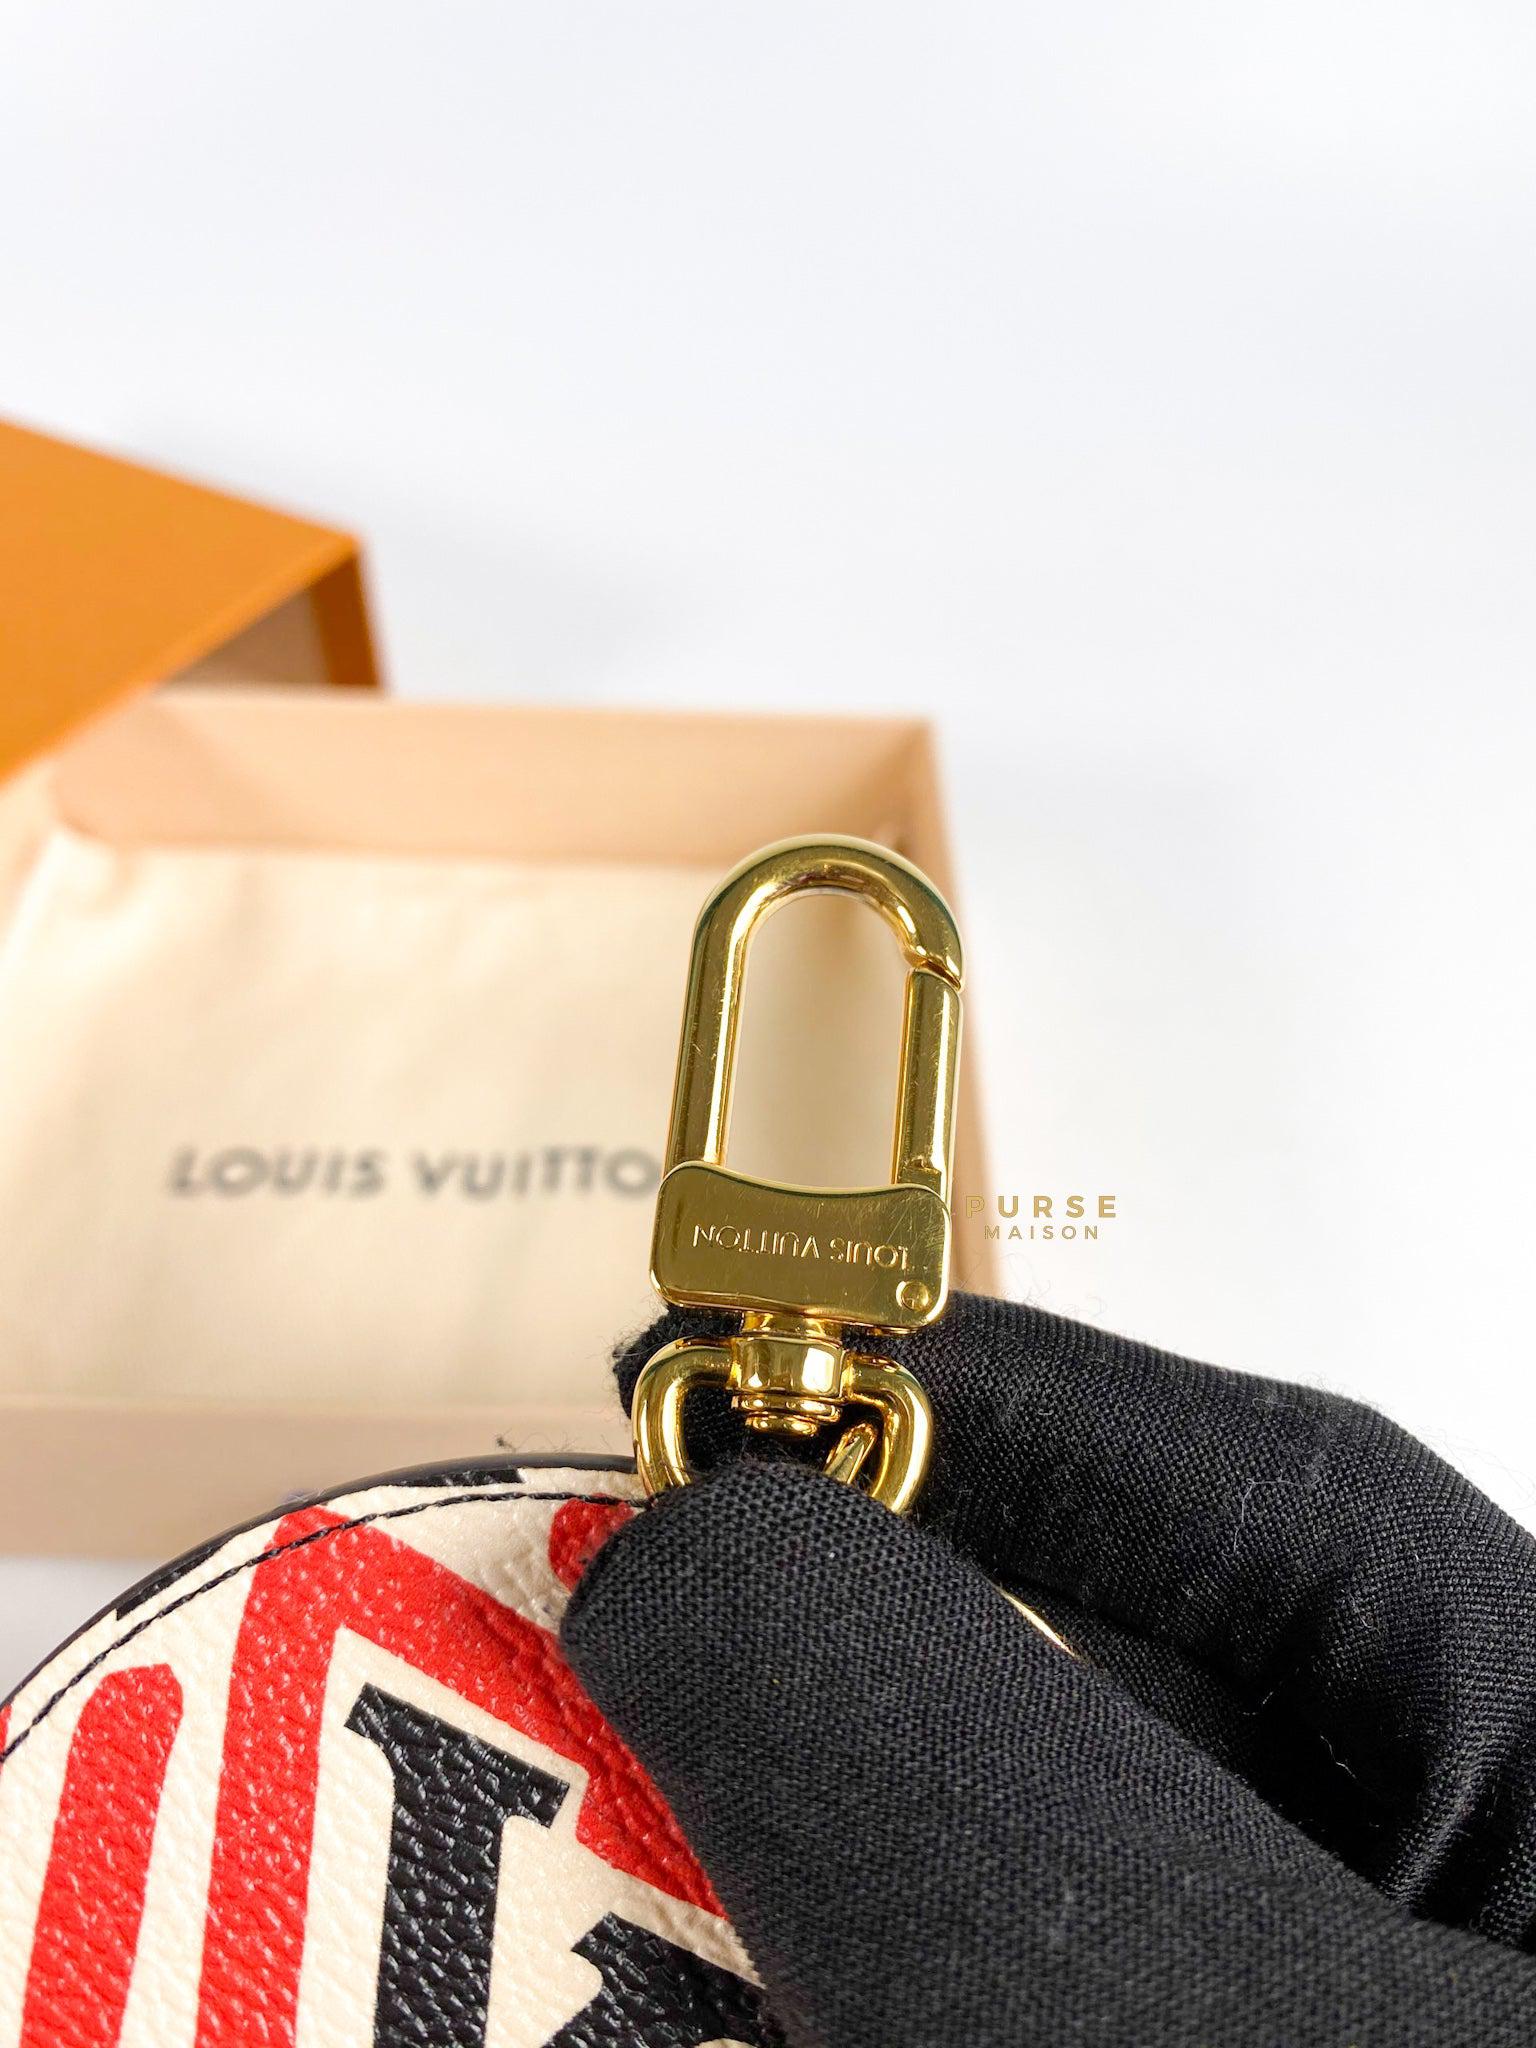 Louis Vuitton Porte Cle Illustre Key Chain